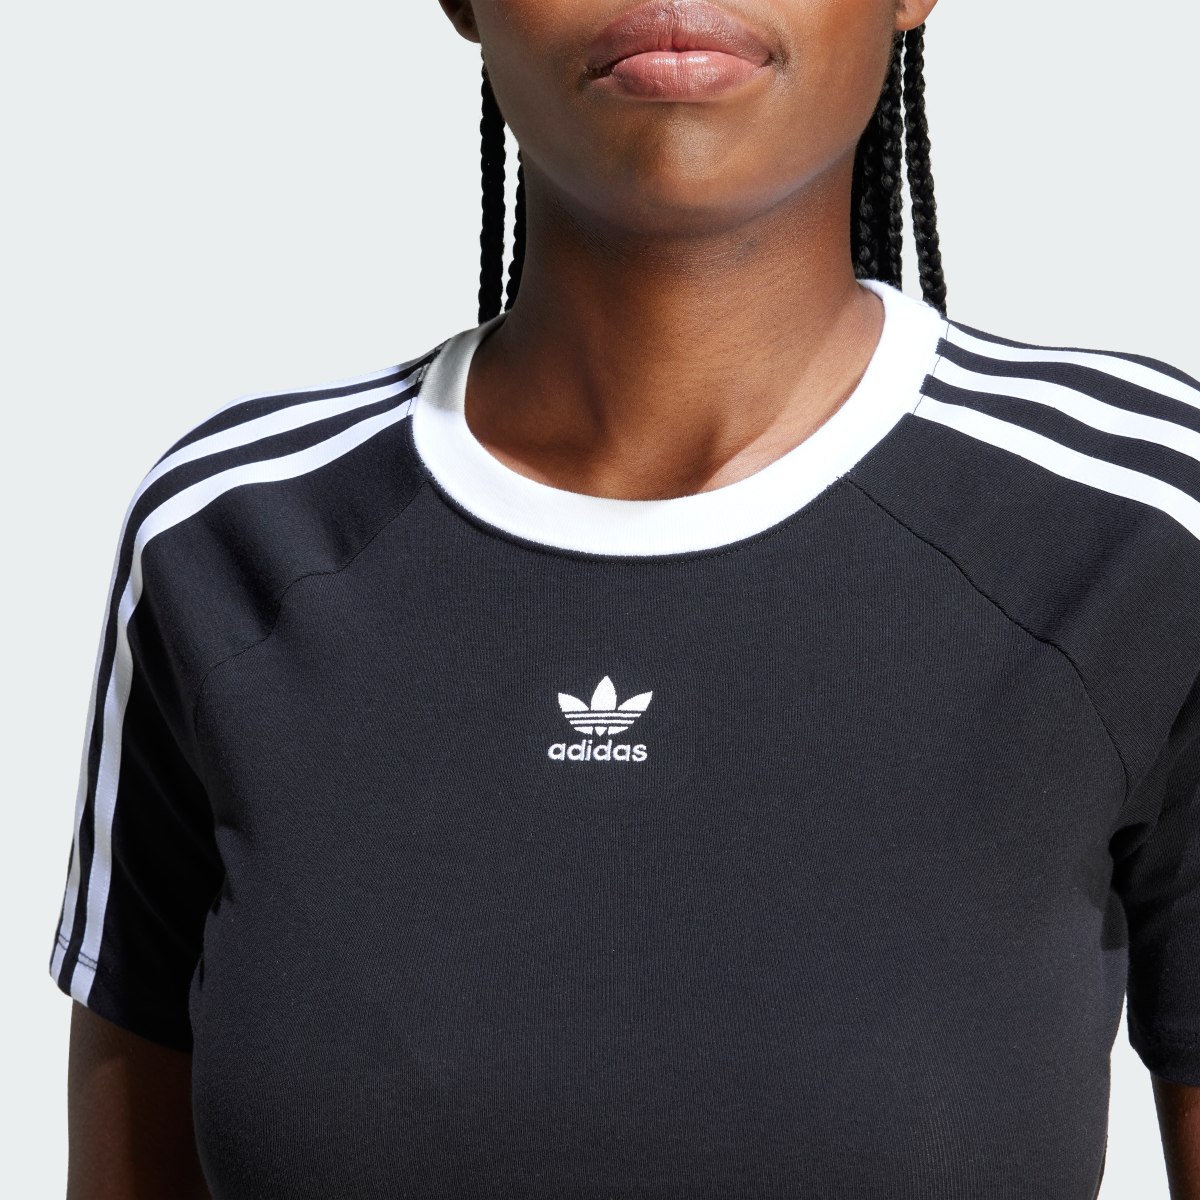 Adidas T-shirt 3-Stripes. 7